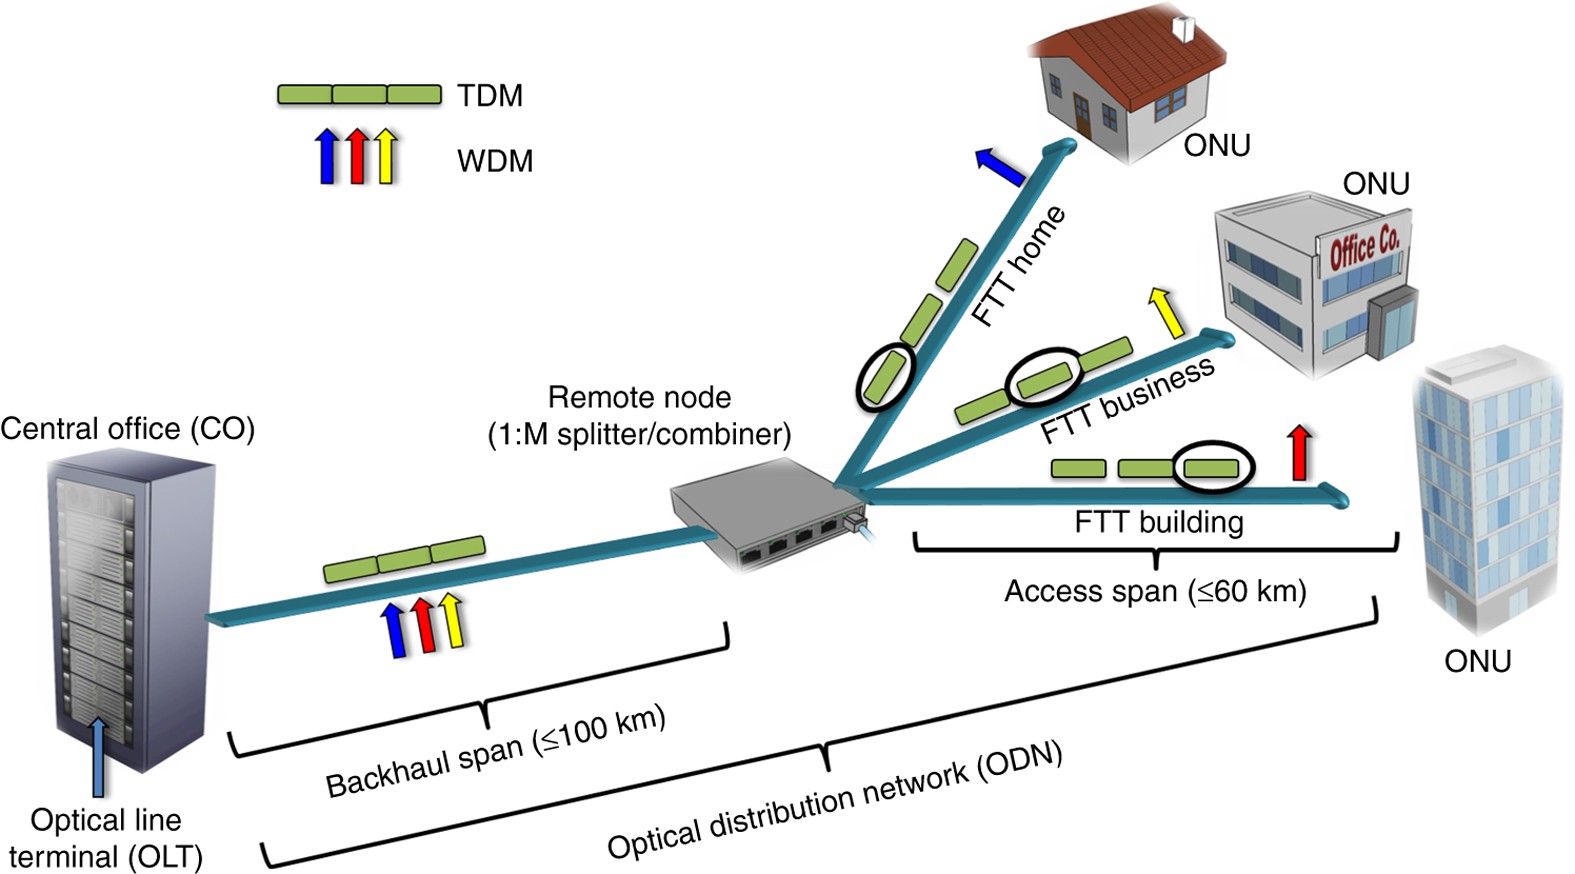 Wdm device. Частотная сетка DWDM 50 ГГЦ. Технология уплотнения в WDM. DWDM шасси. Технология пассивных оптических сетей Pon.